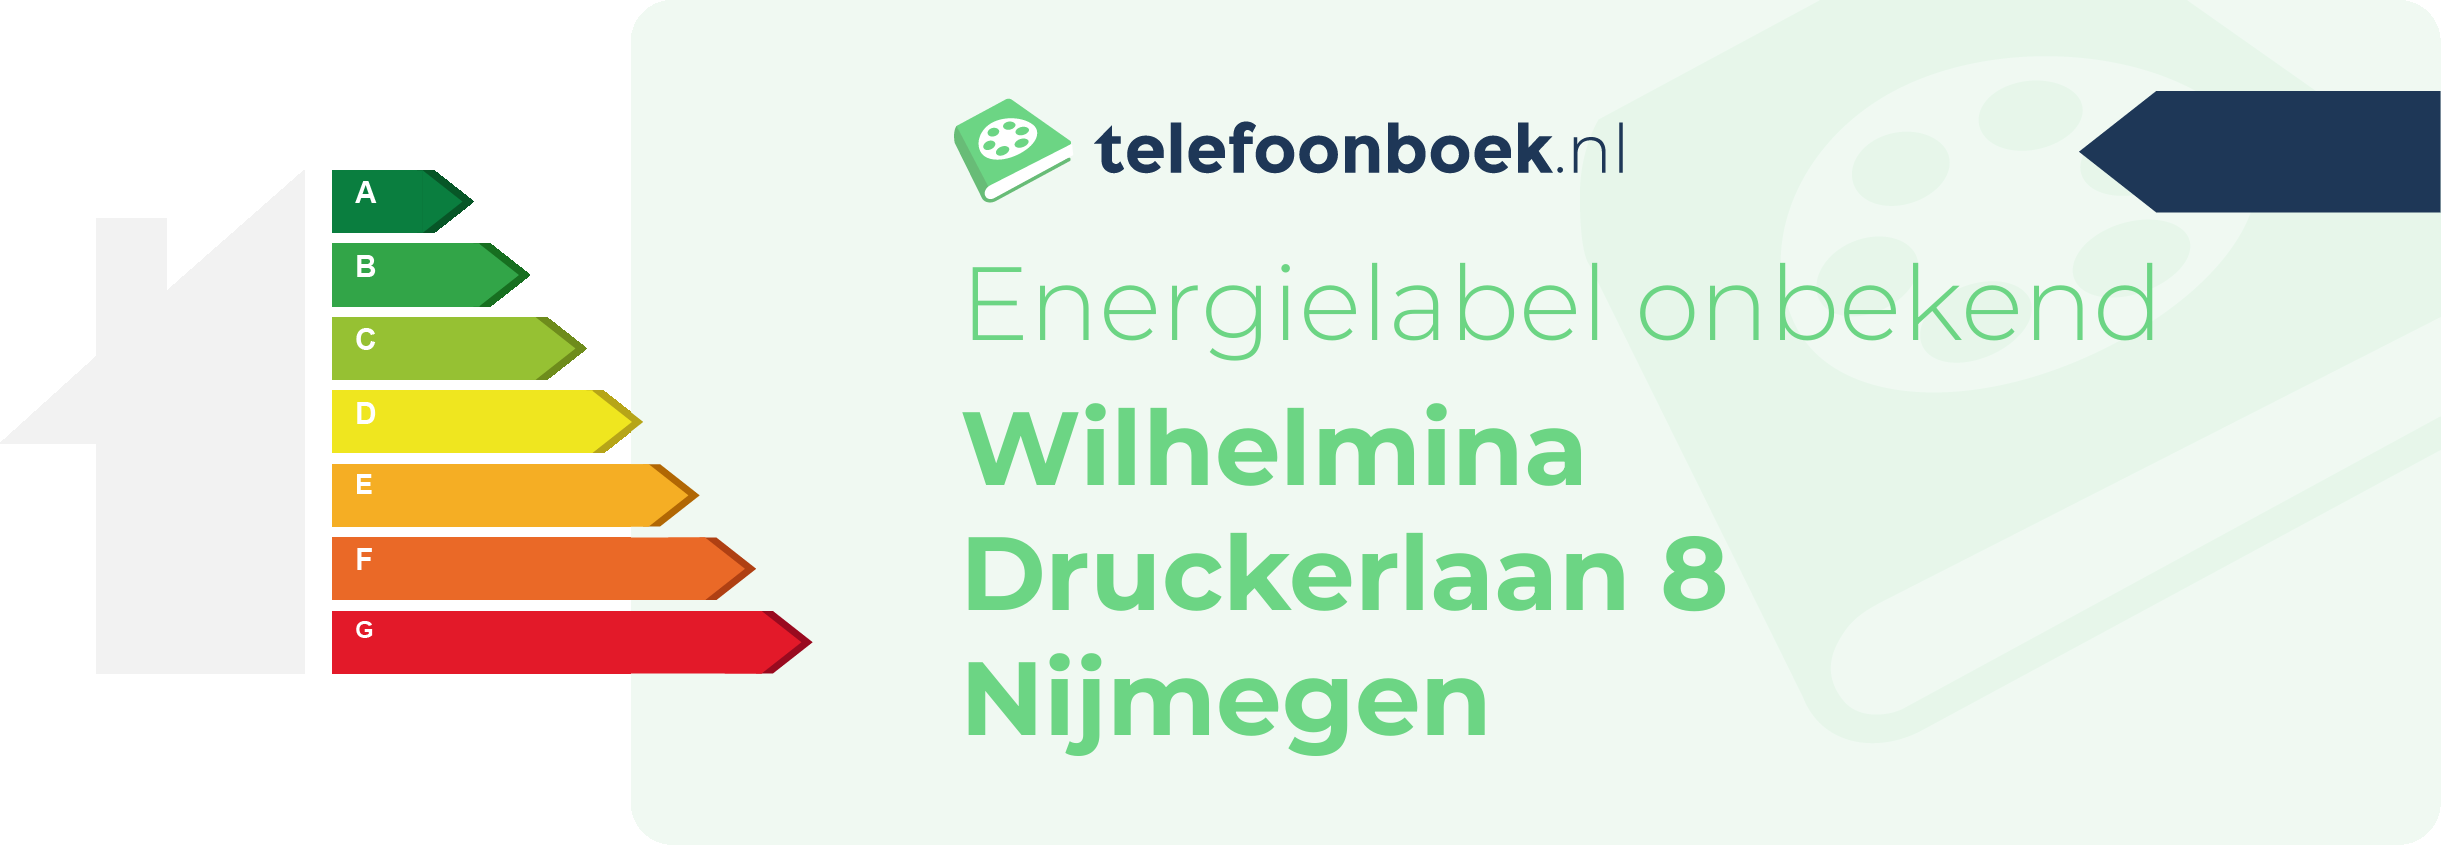 Energielabel Wilhelmina Druckerlaan 8 Nijmegen